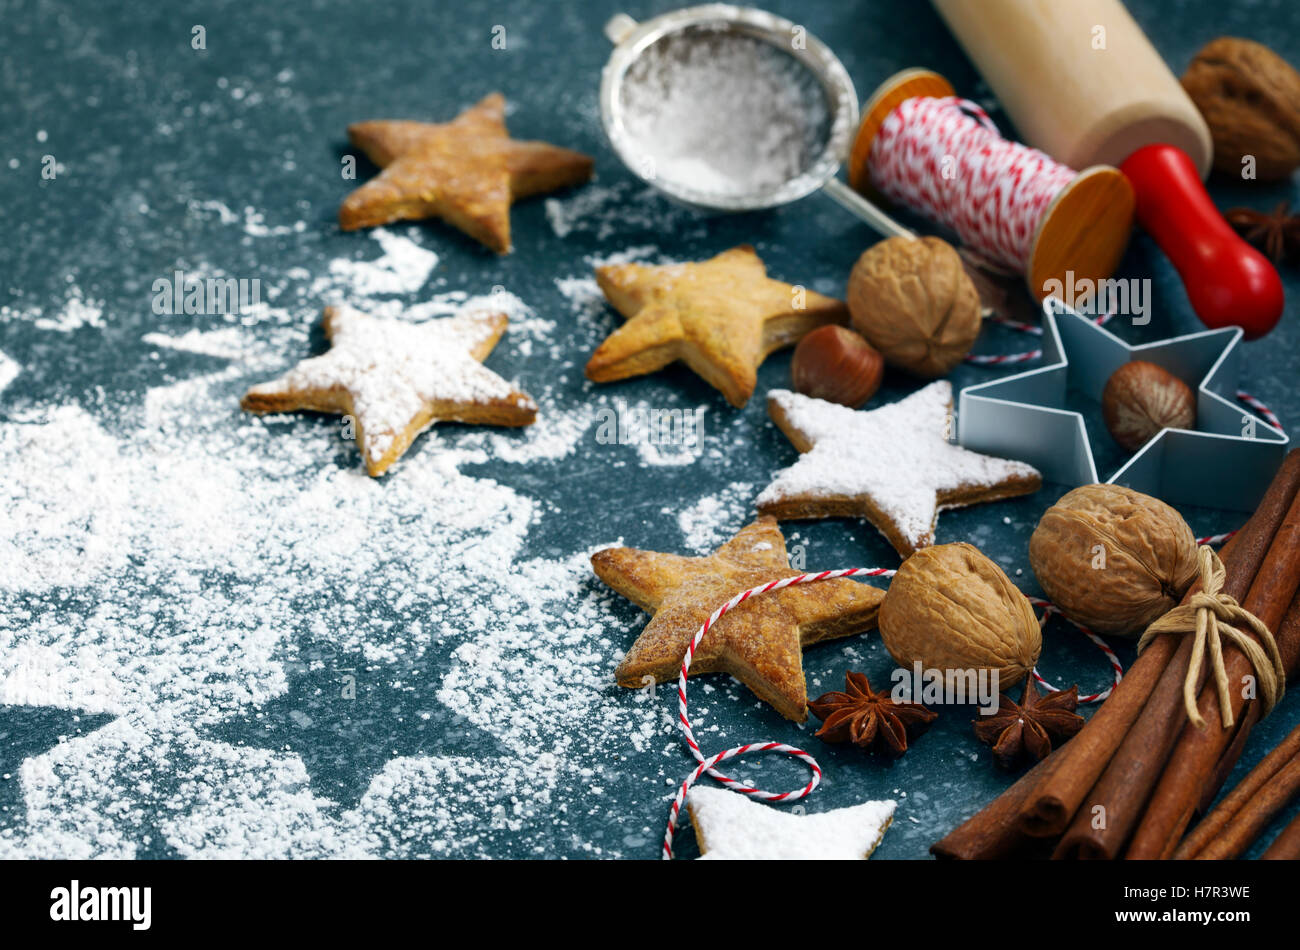 Les biscuits de Noël, broche du rouleau, cinnmon, écrous et emporte-pièce sur fond sombre Banque D'Images